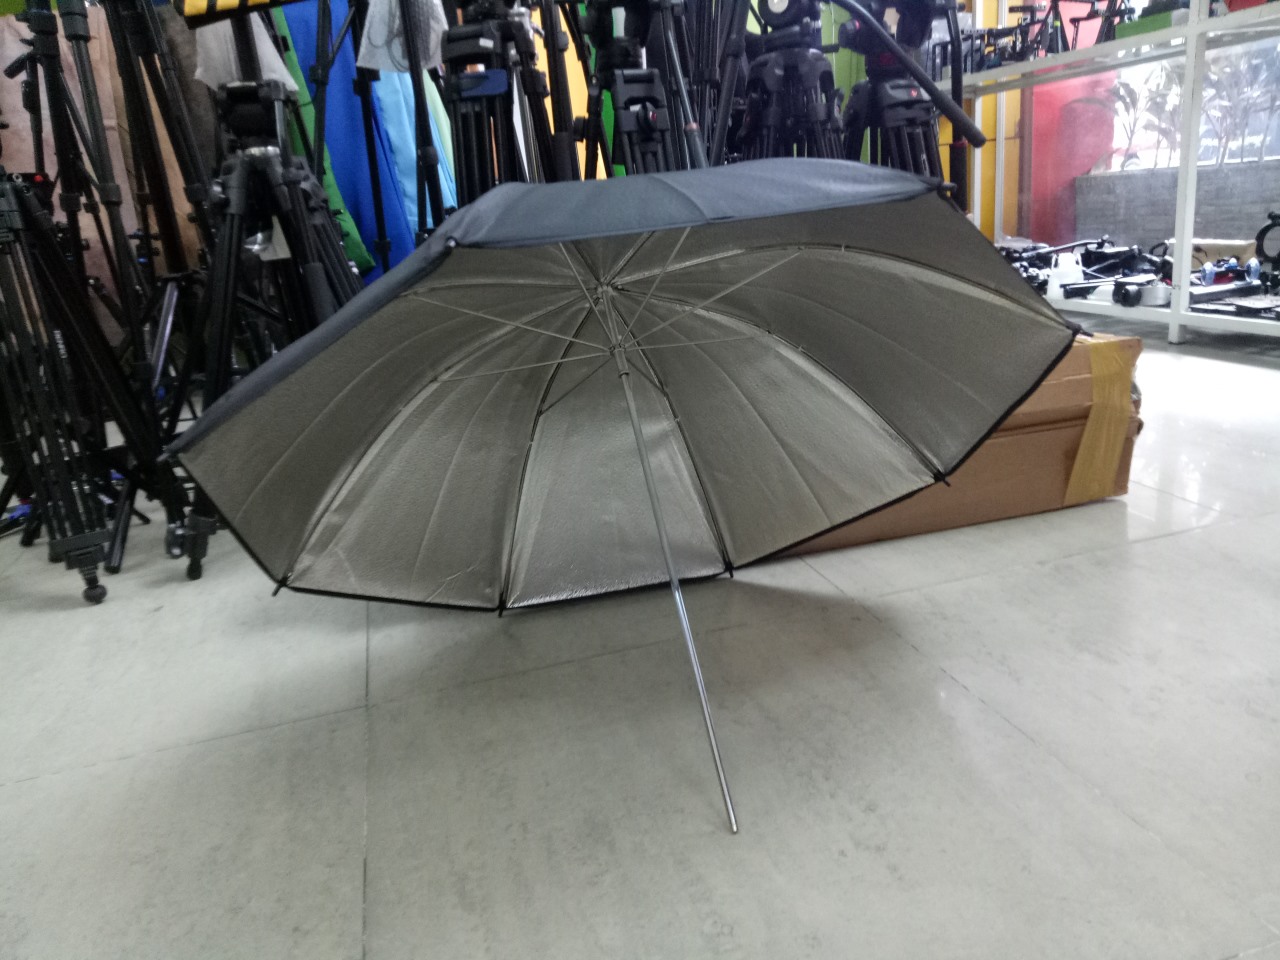 Reflective Silver Umbrella